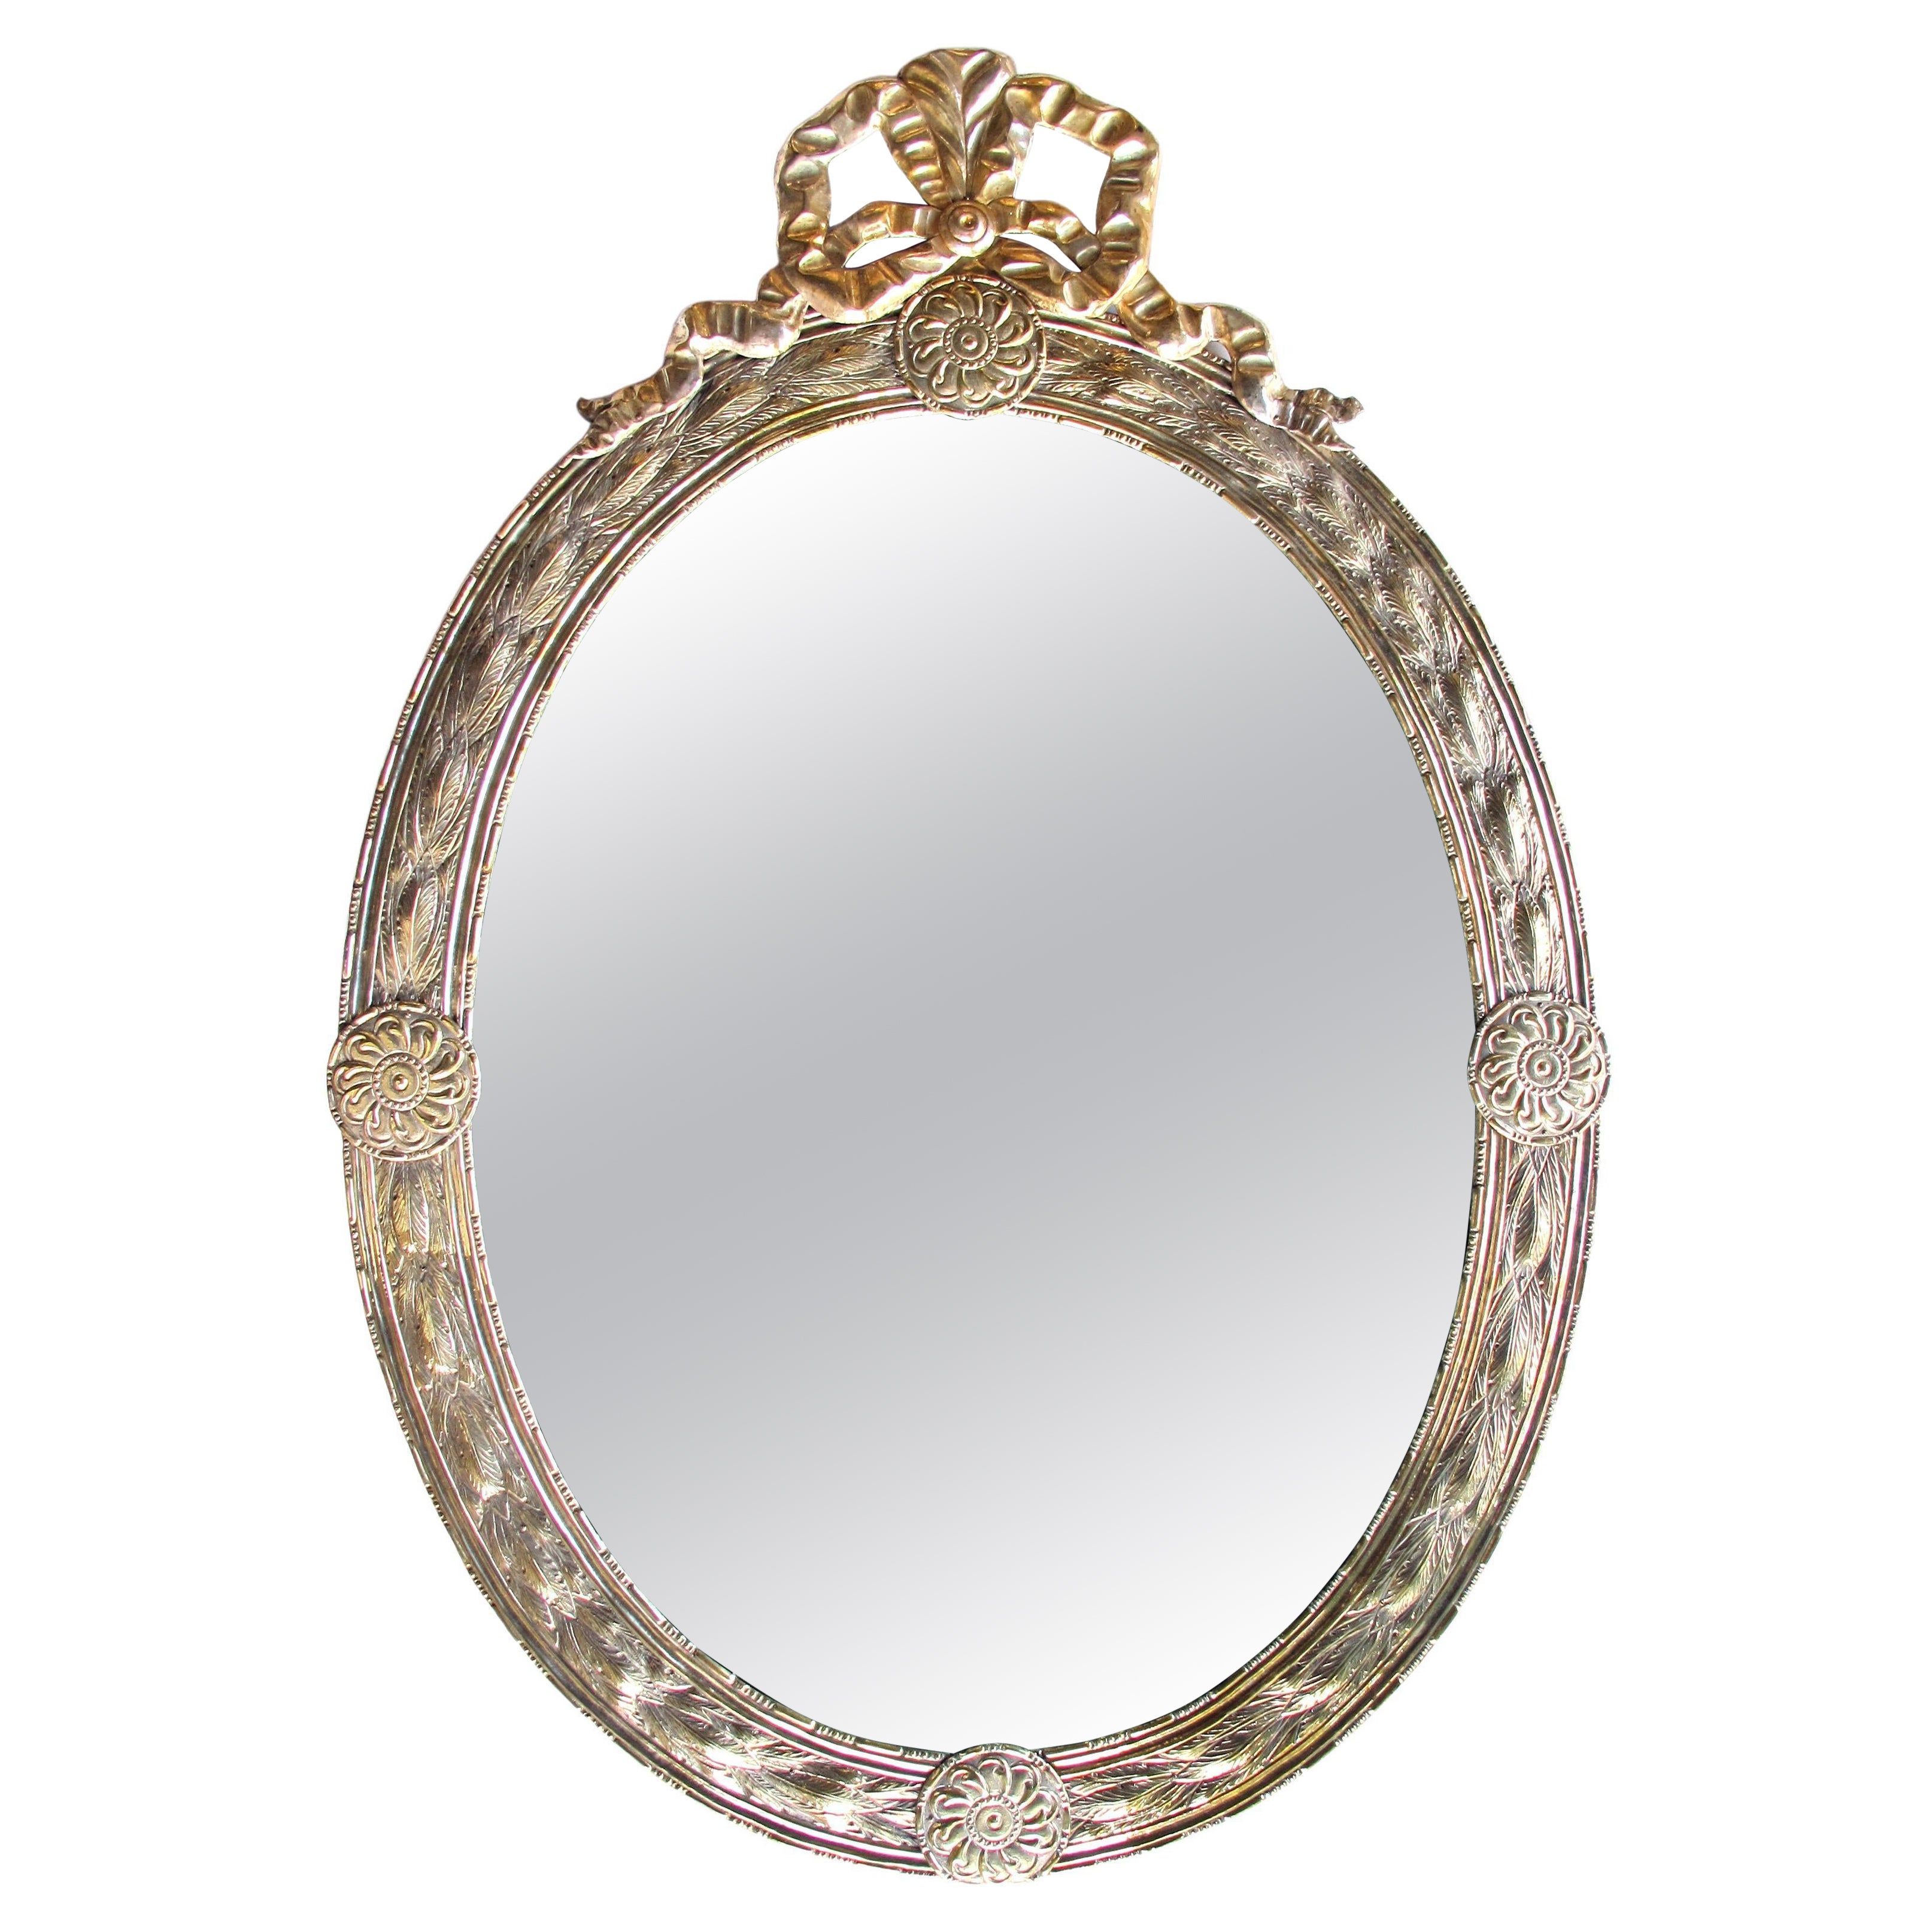 Grand miroir ovale de style néoclassique hollandais en argent et en vermeil repoussé